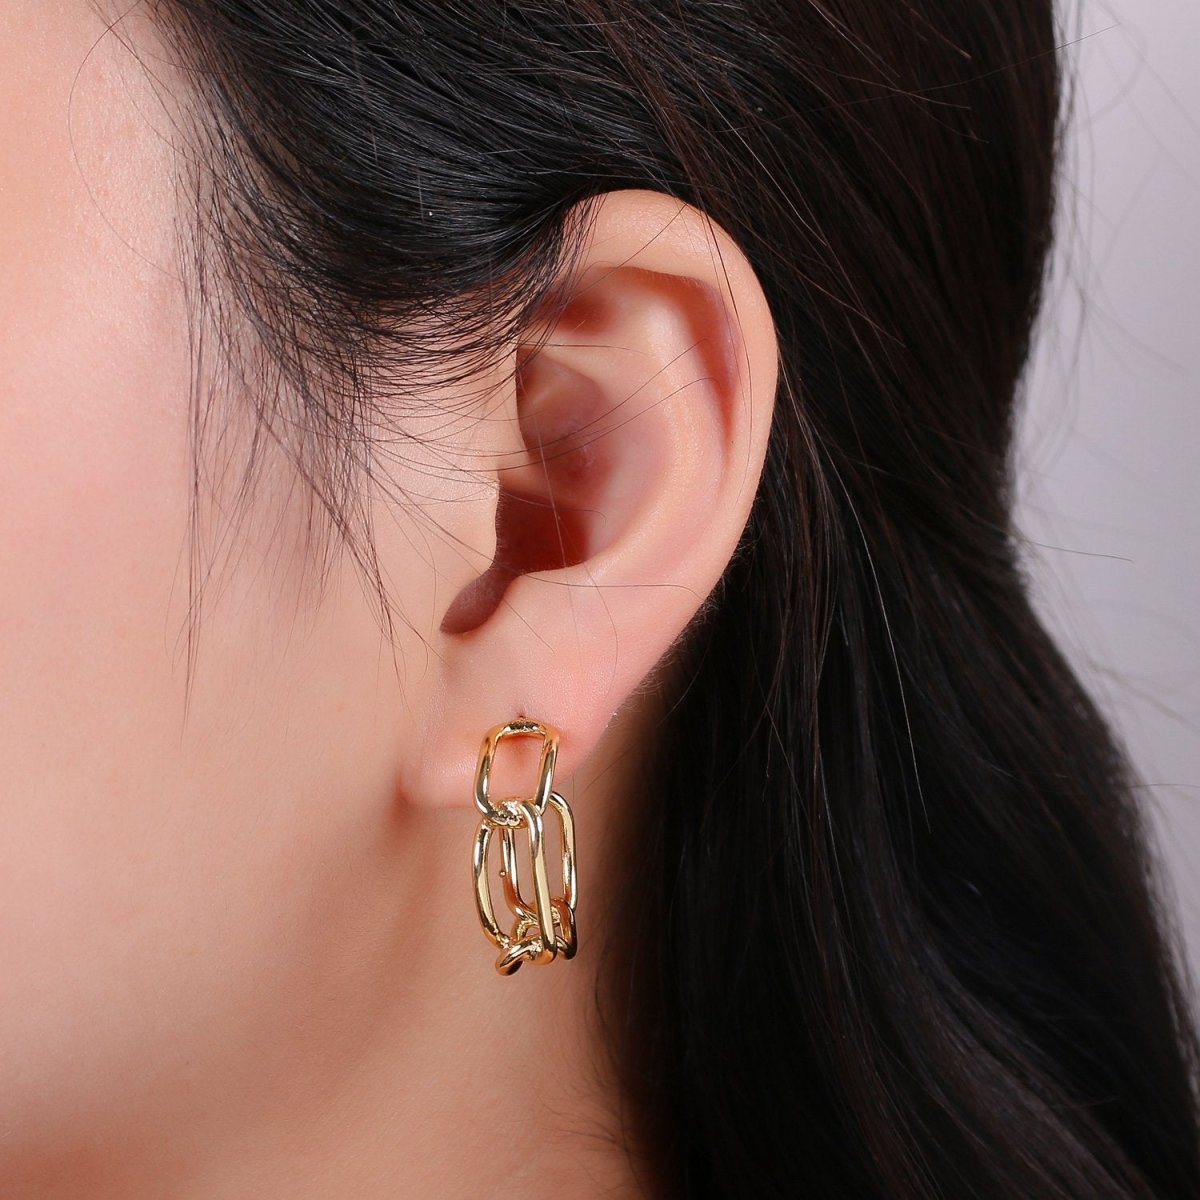 24k Vermeil Gold Earrings, Hoop Earrings, Long Chain Link Earring, Stud Earring, Gift for Her, Earrings for Women, Everyday Wear Earring Q-528 - DLUXCA